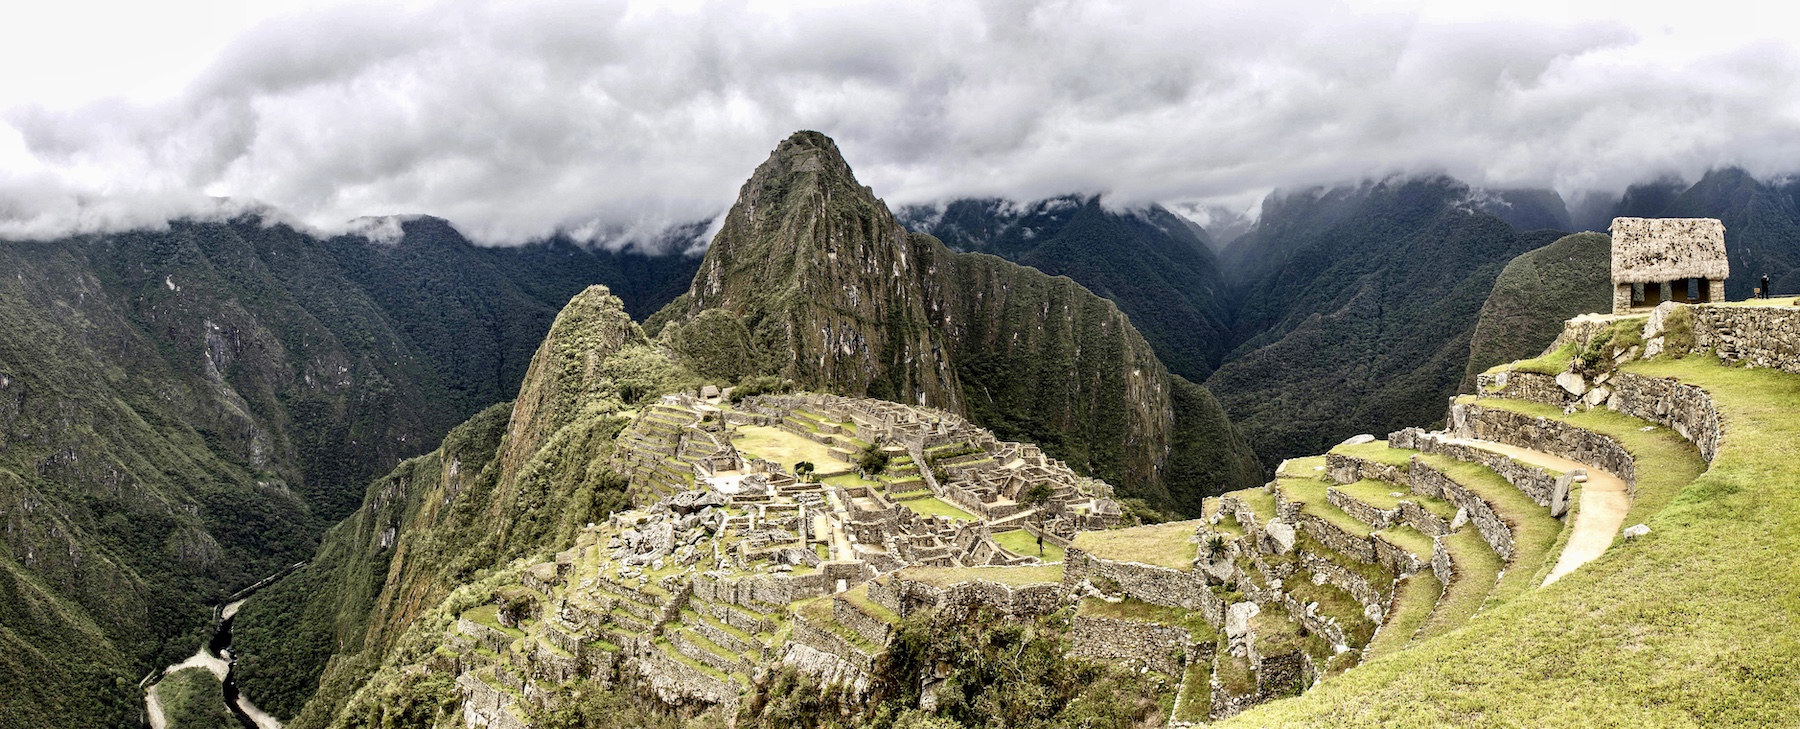 Machu Picchu closed indefinitely